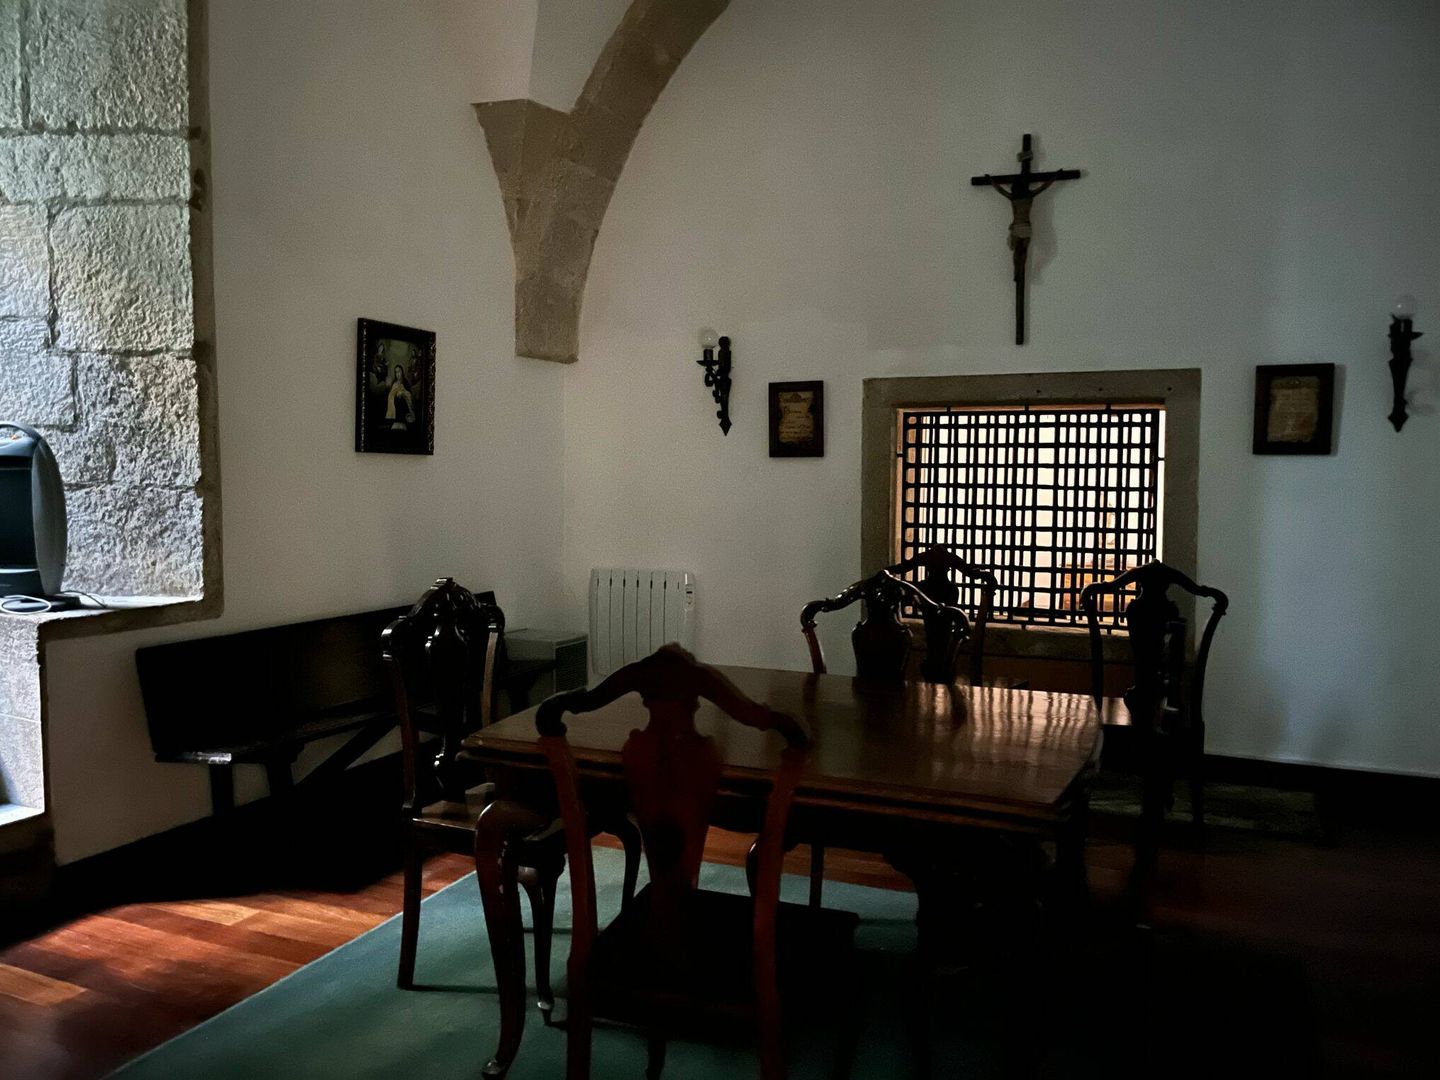 El interior del convento. (A. F.)